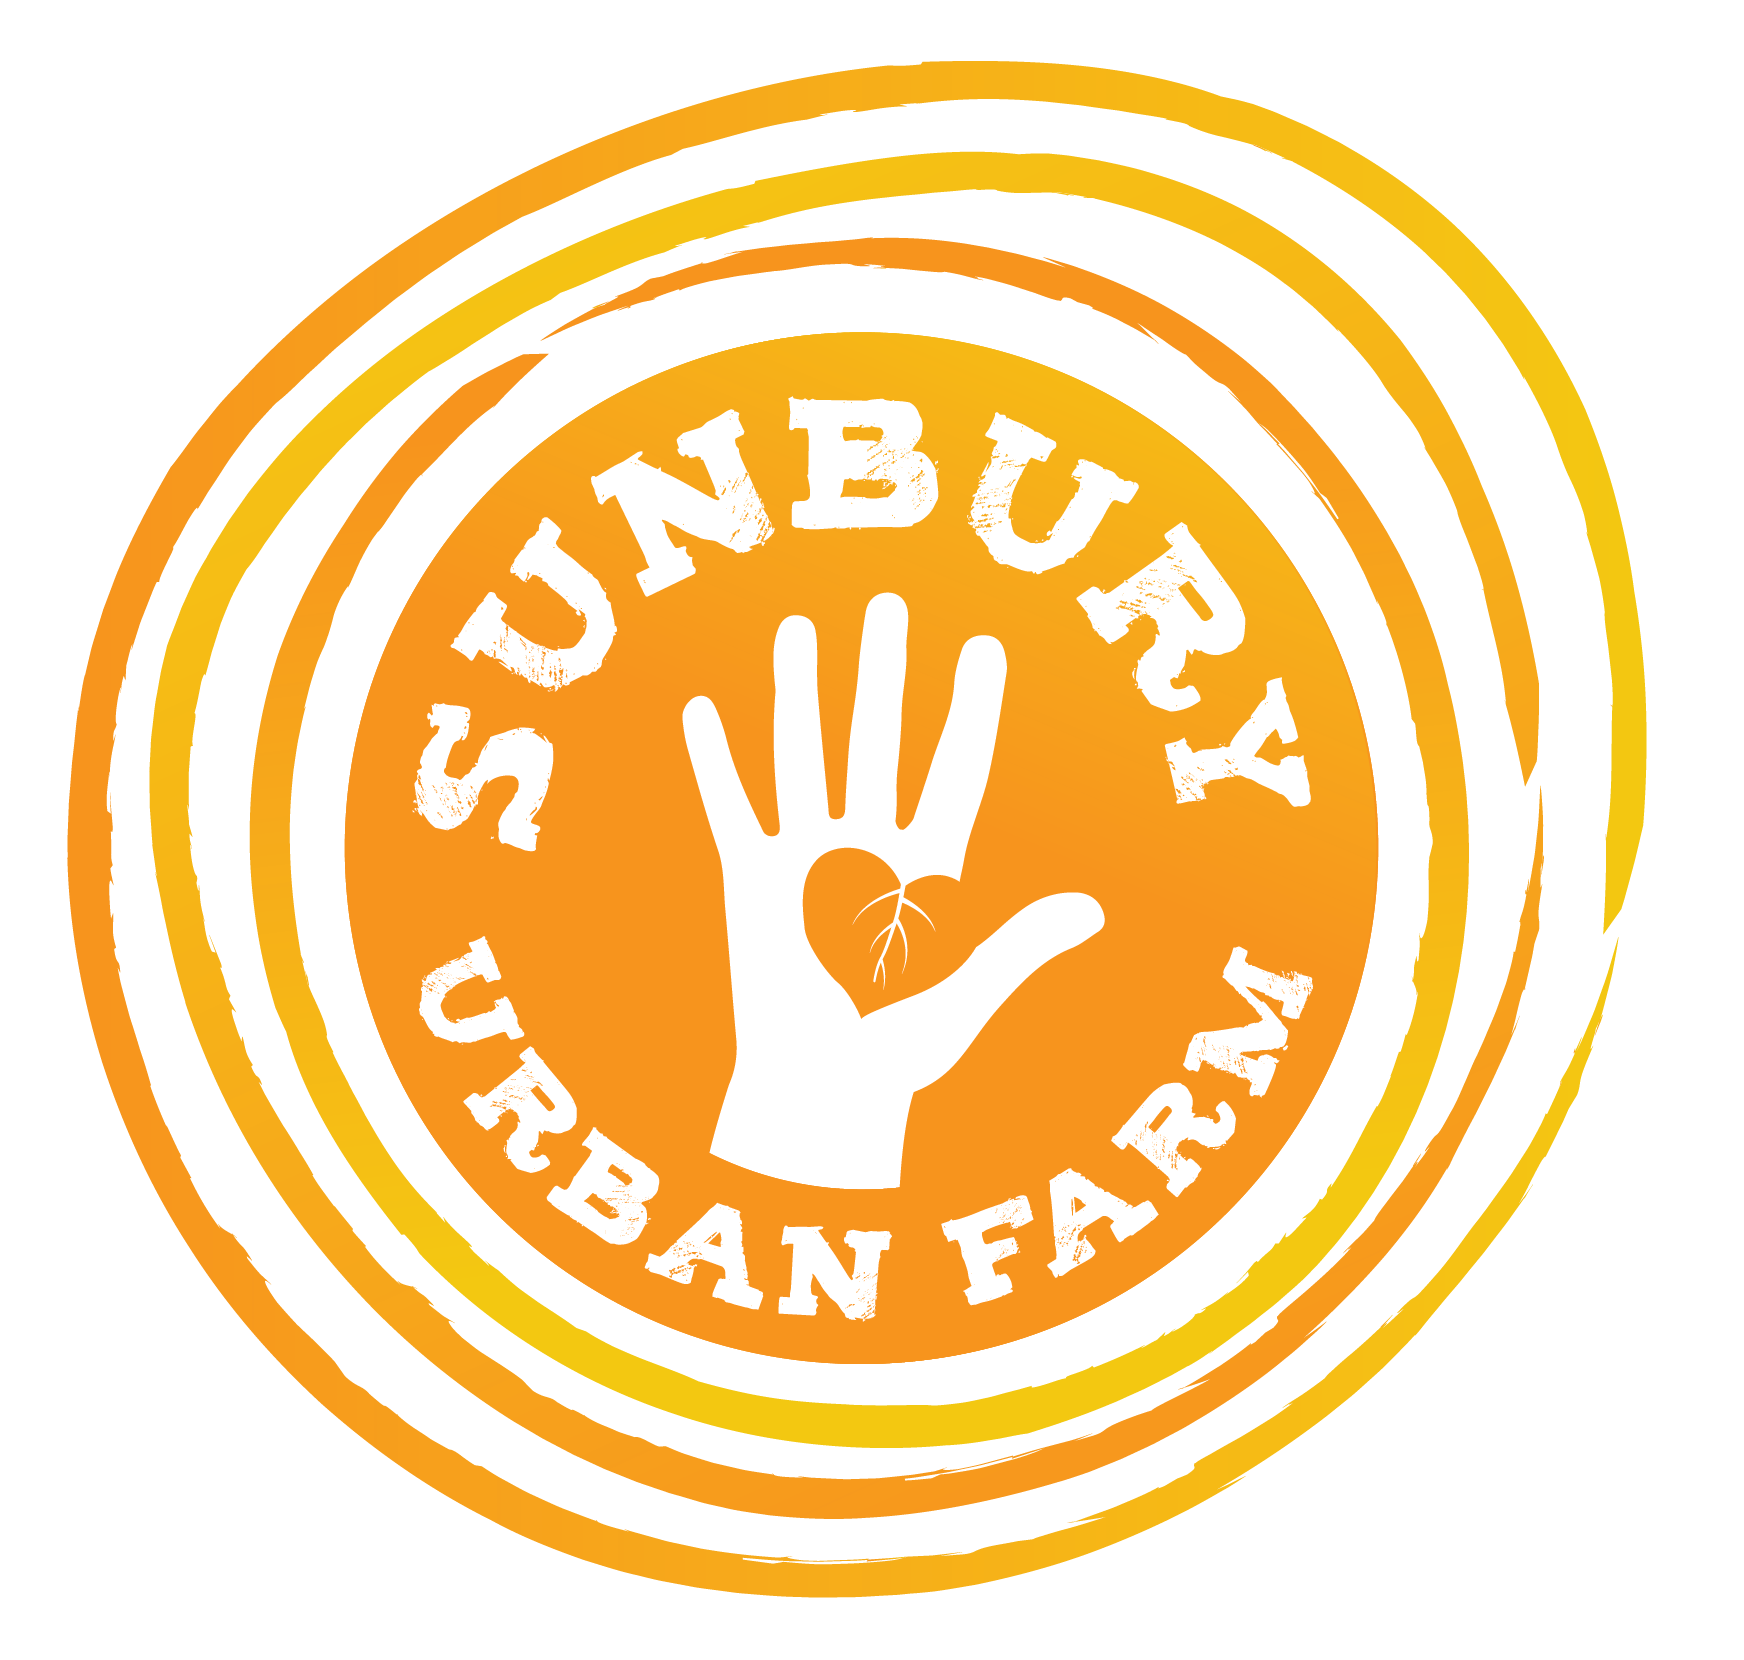 Sunbury Urban Farm logo